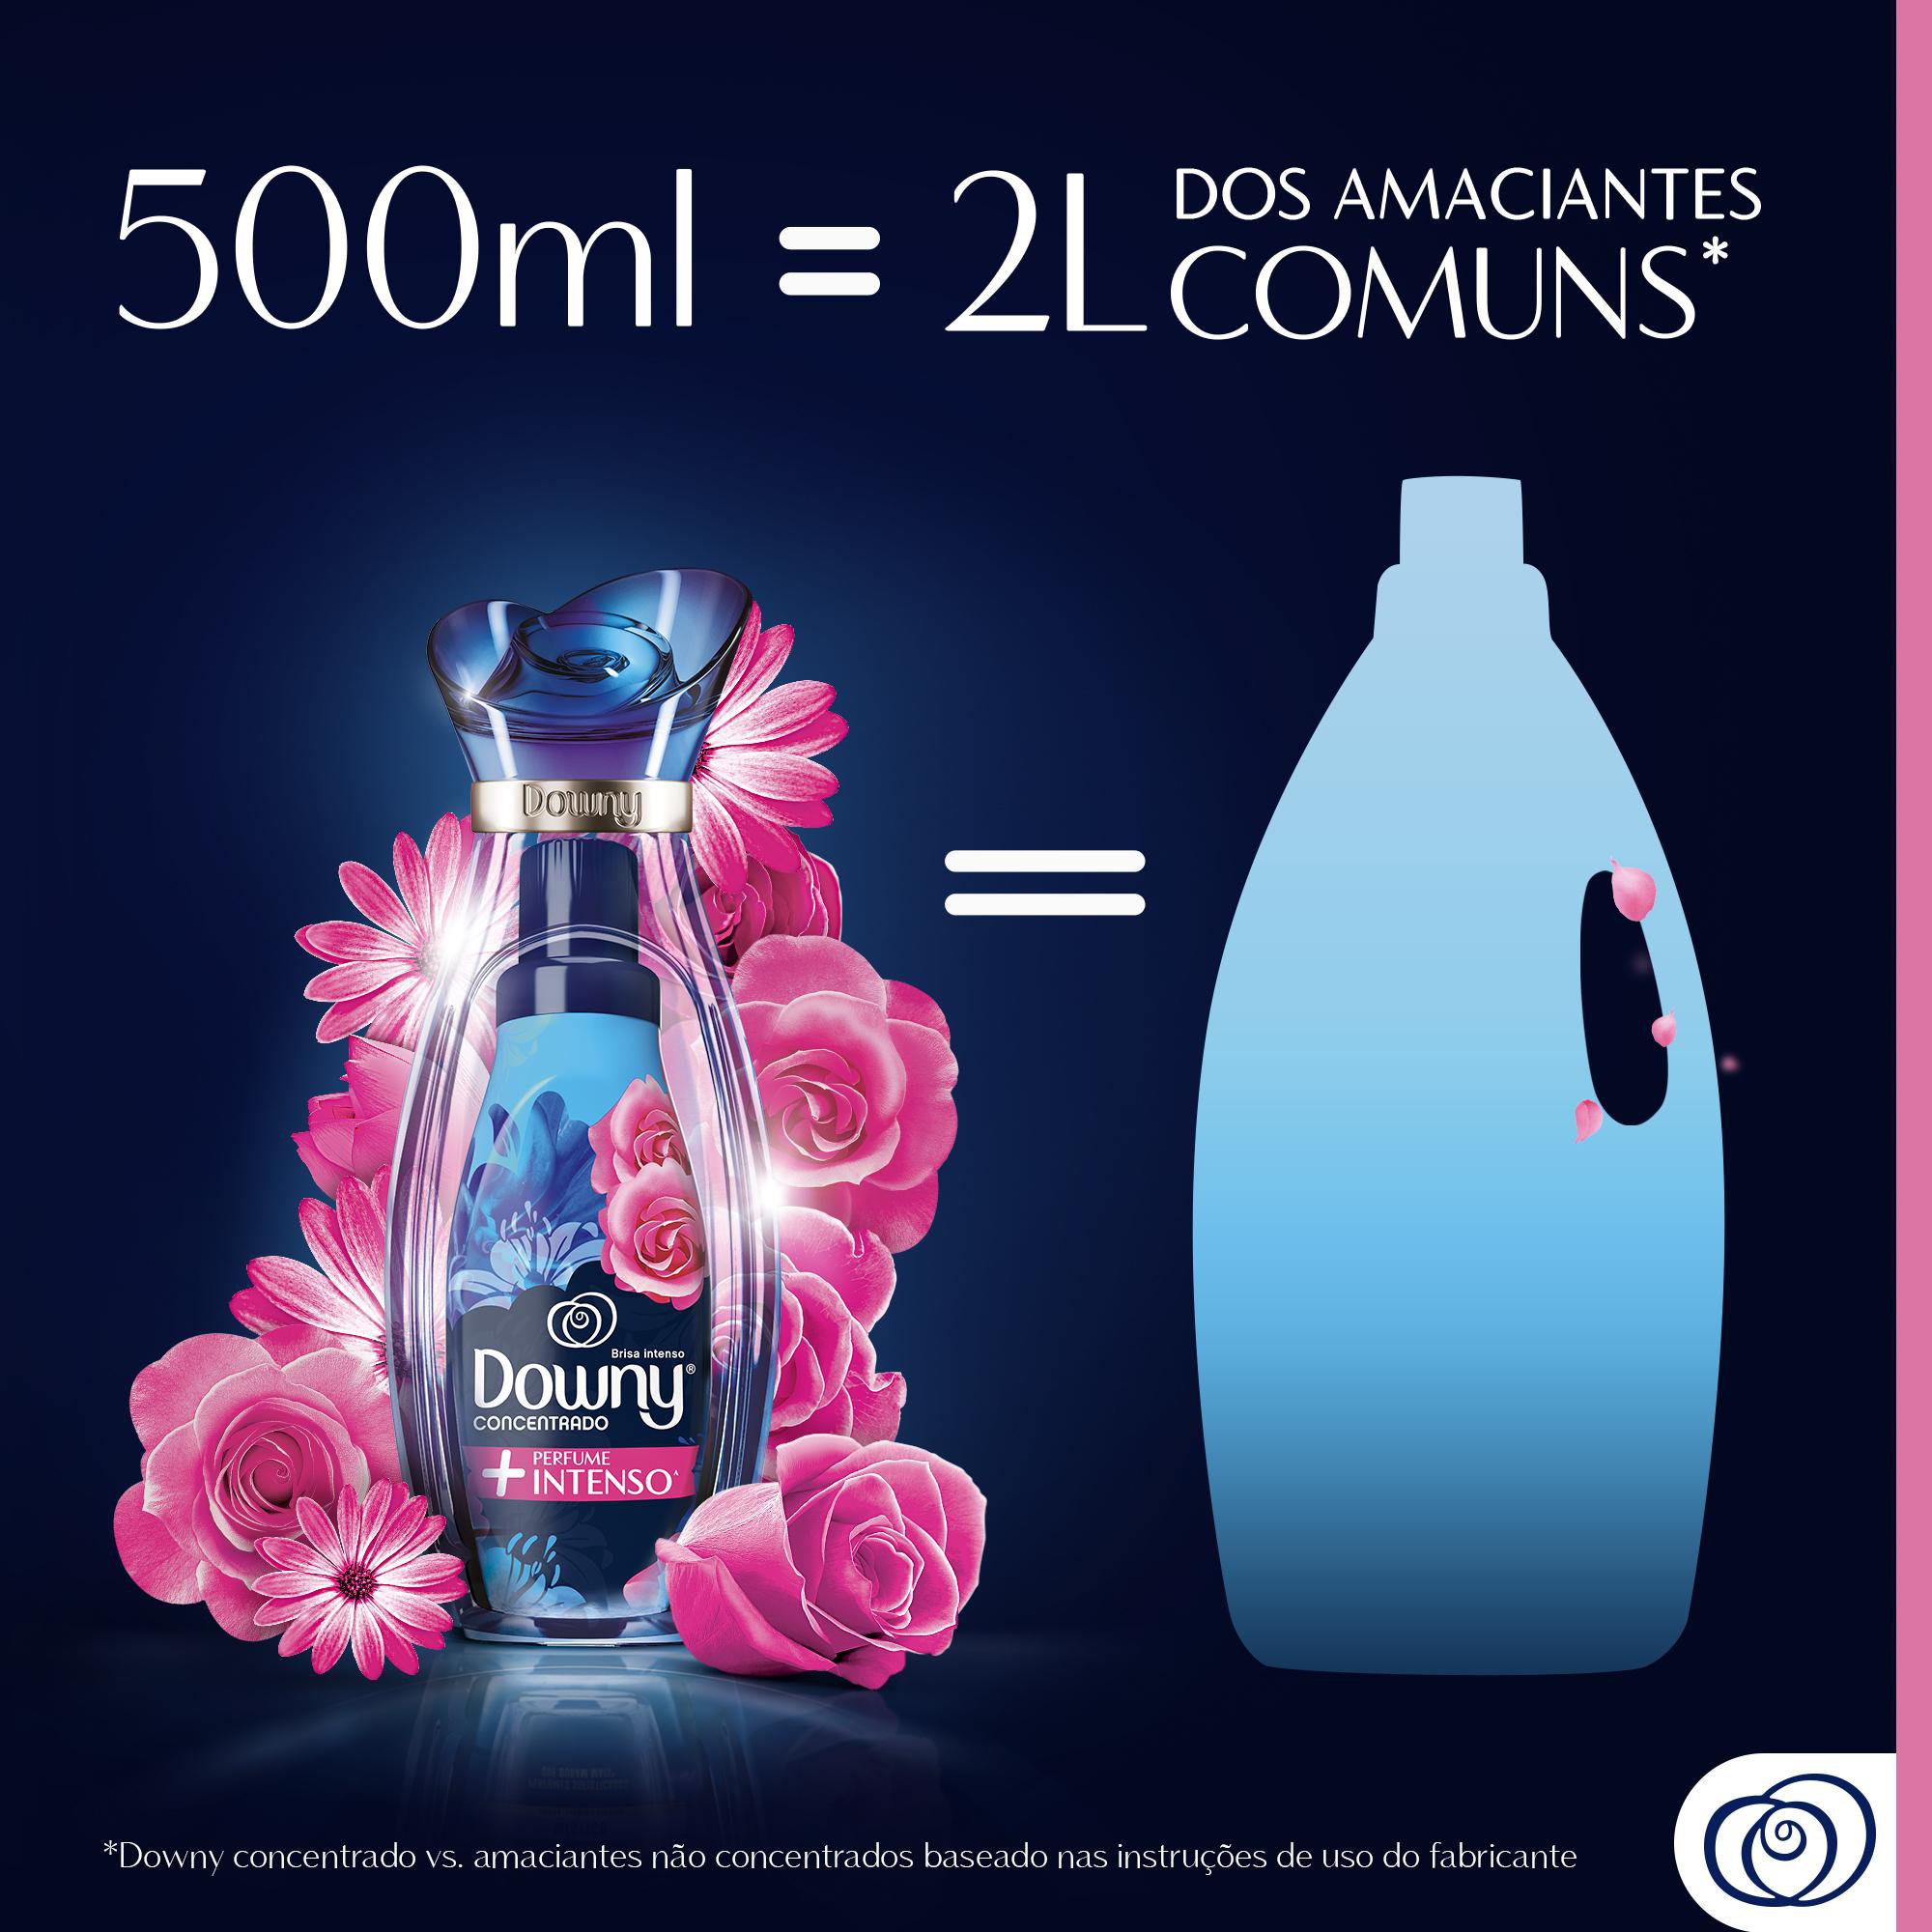 Downy Perfume Collection Místico - Amaciante Concentrado, 3L